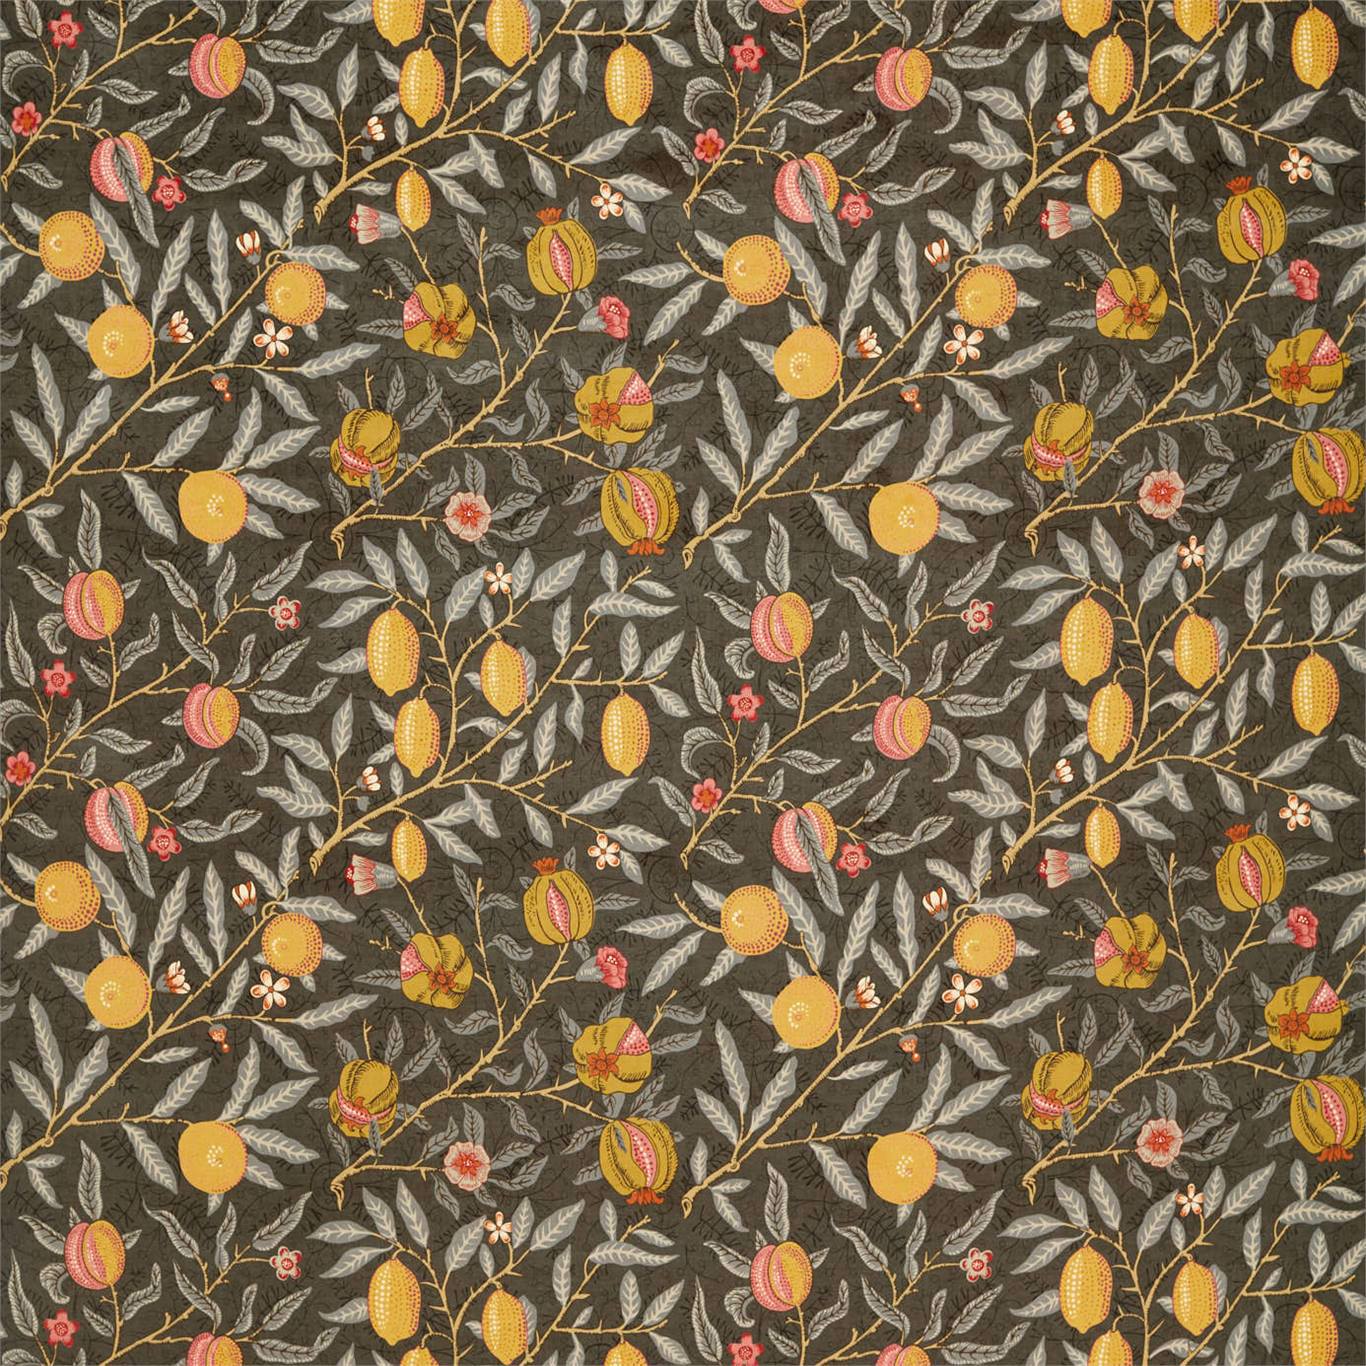 Fruit Velvet Fabric by Morris & Co.